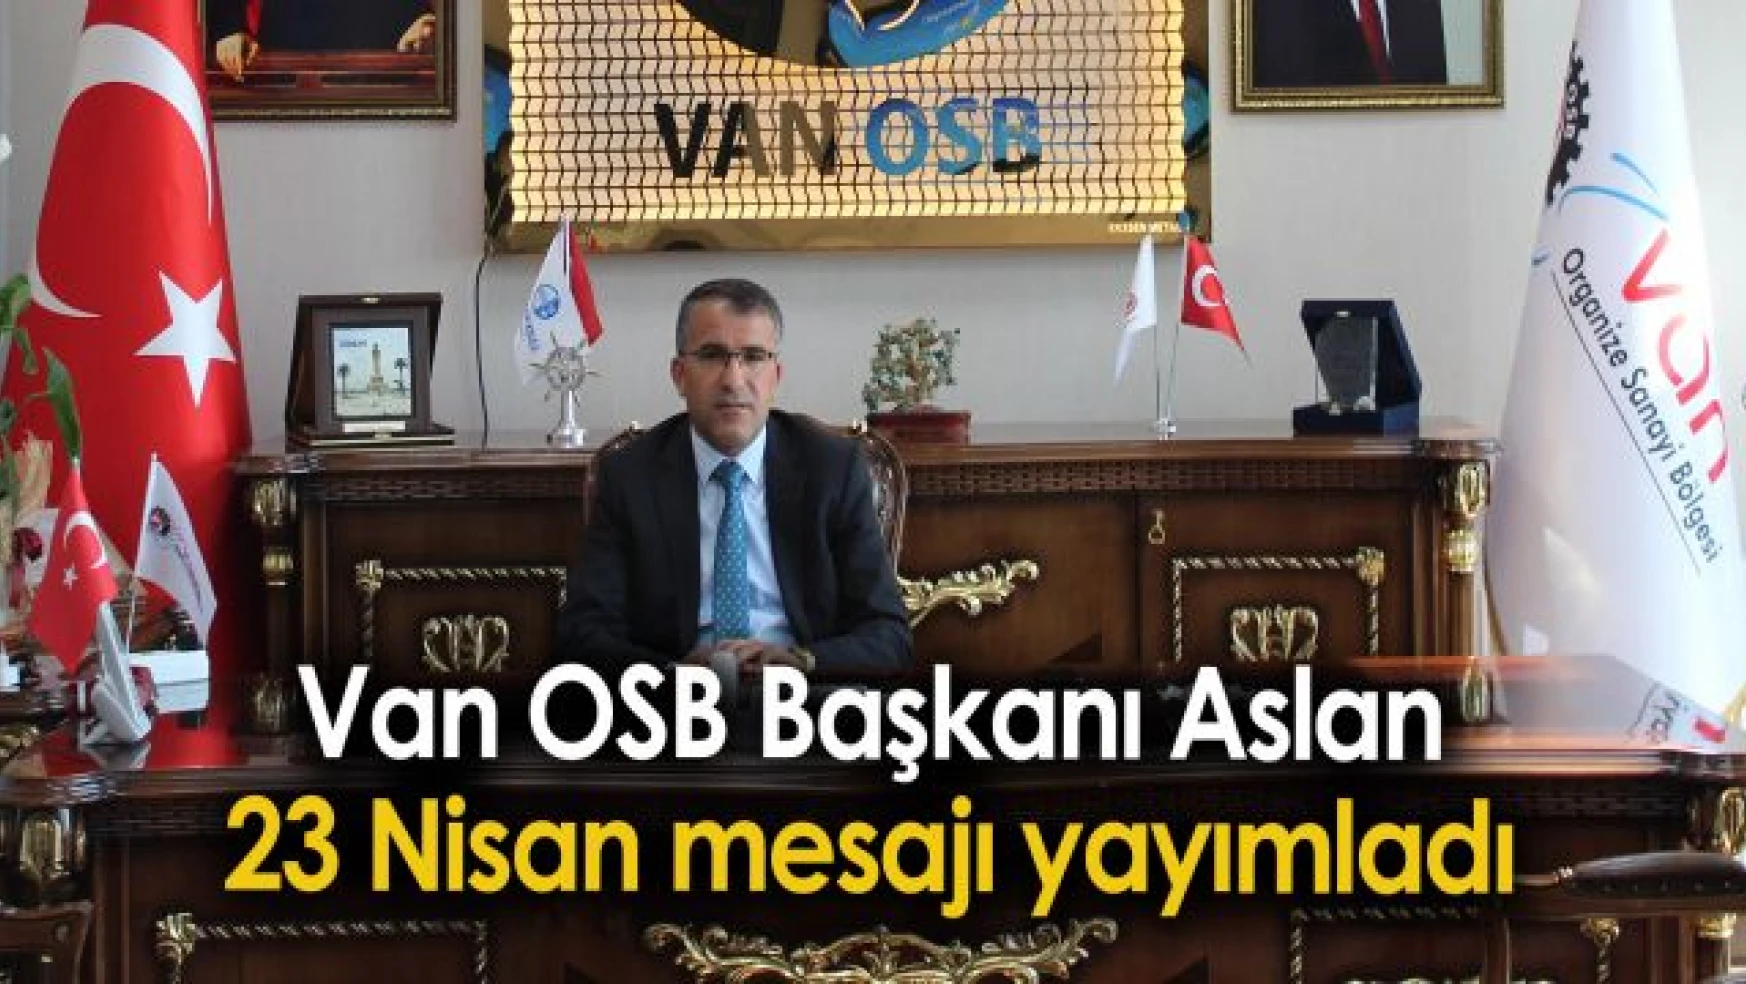 Van OSB Başkanı Aslan'dan 23 Nisan mesajı